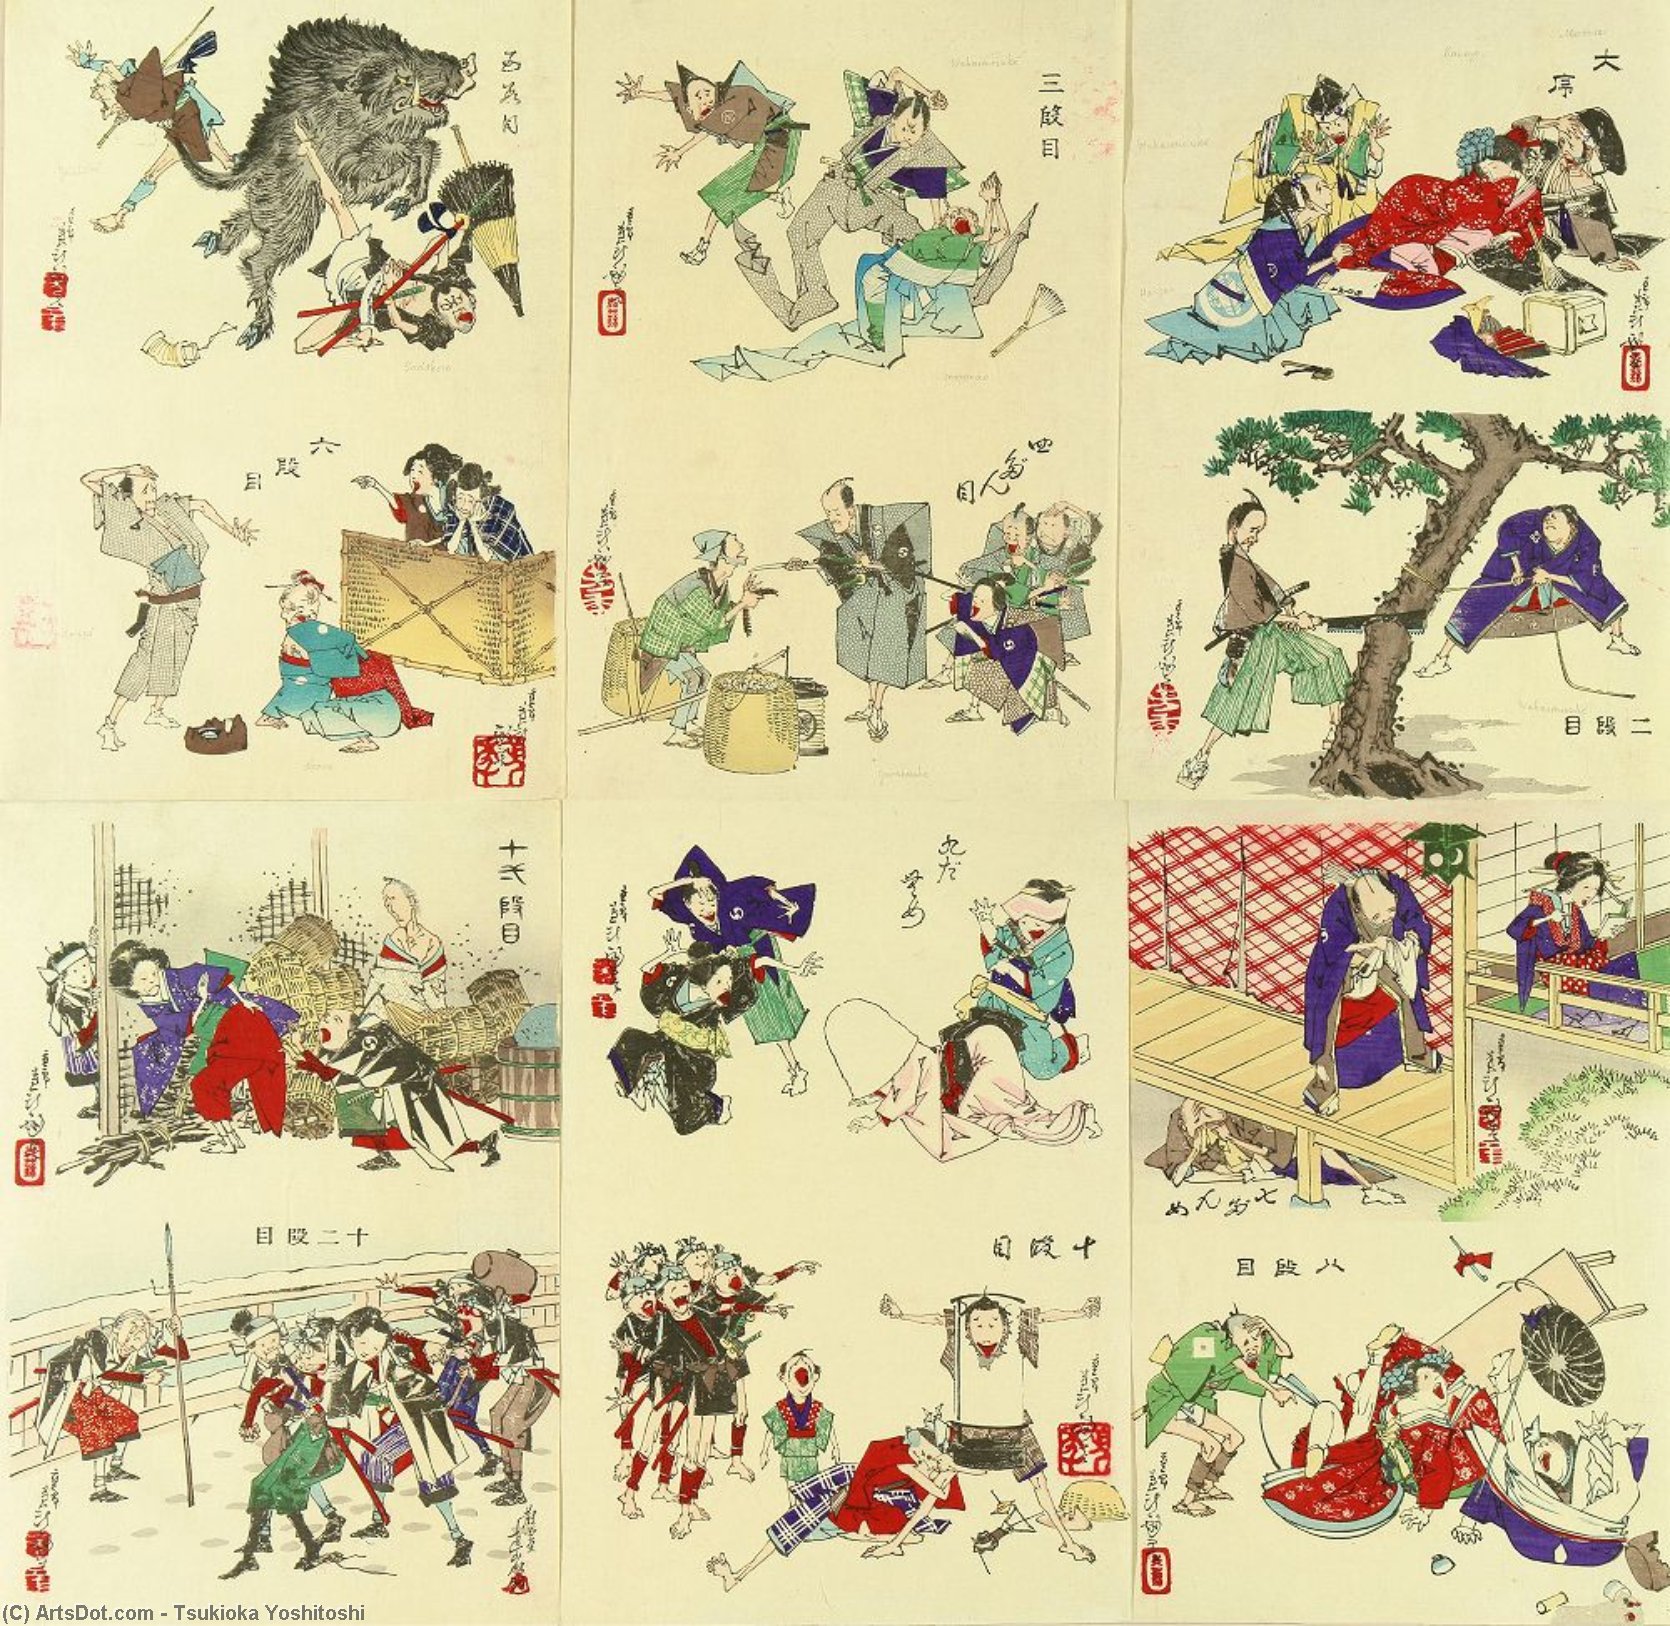 WikiOO.org - Encyclopedia of Fine Arts - Malba, Artwork Tsukioka Yoshitoshi - Comic Picture